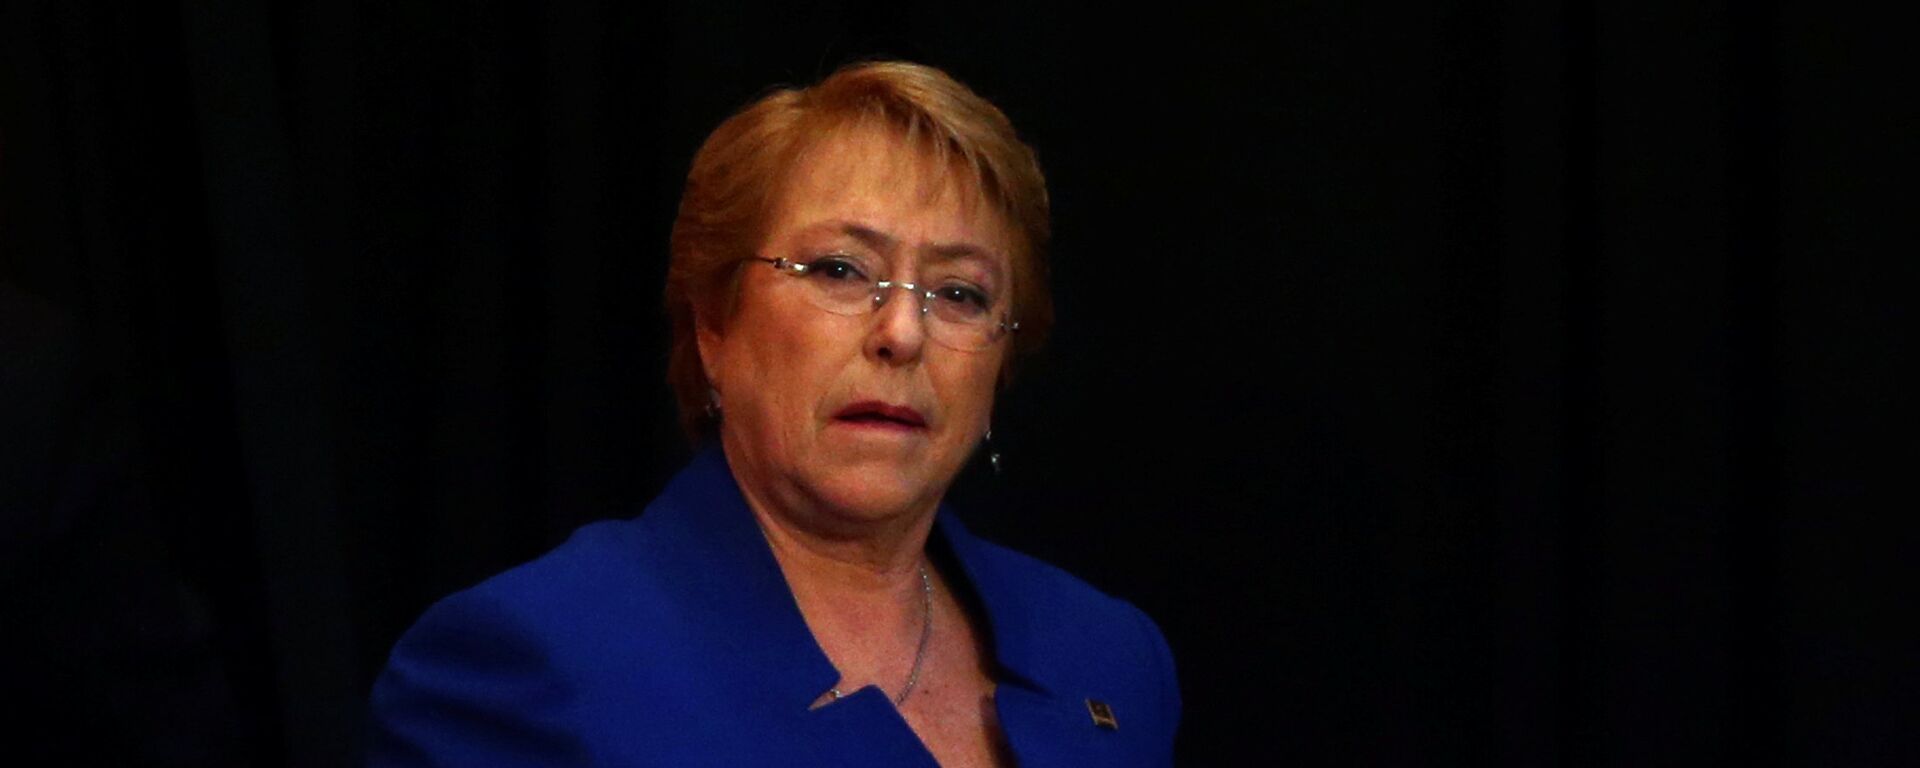 Michelle Bachelet, la alta comisionada de las Naciones Unidas para los Derechos Humanos (ACNUR) - Sputnik Mundo, 1920, 23.11.2021